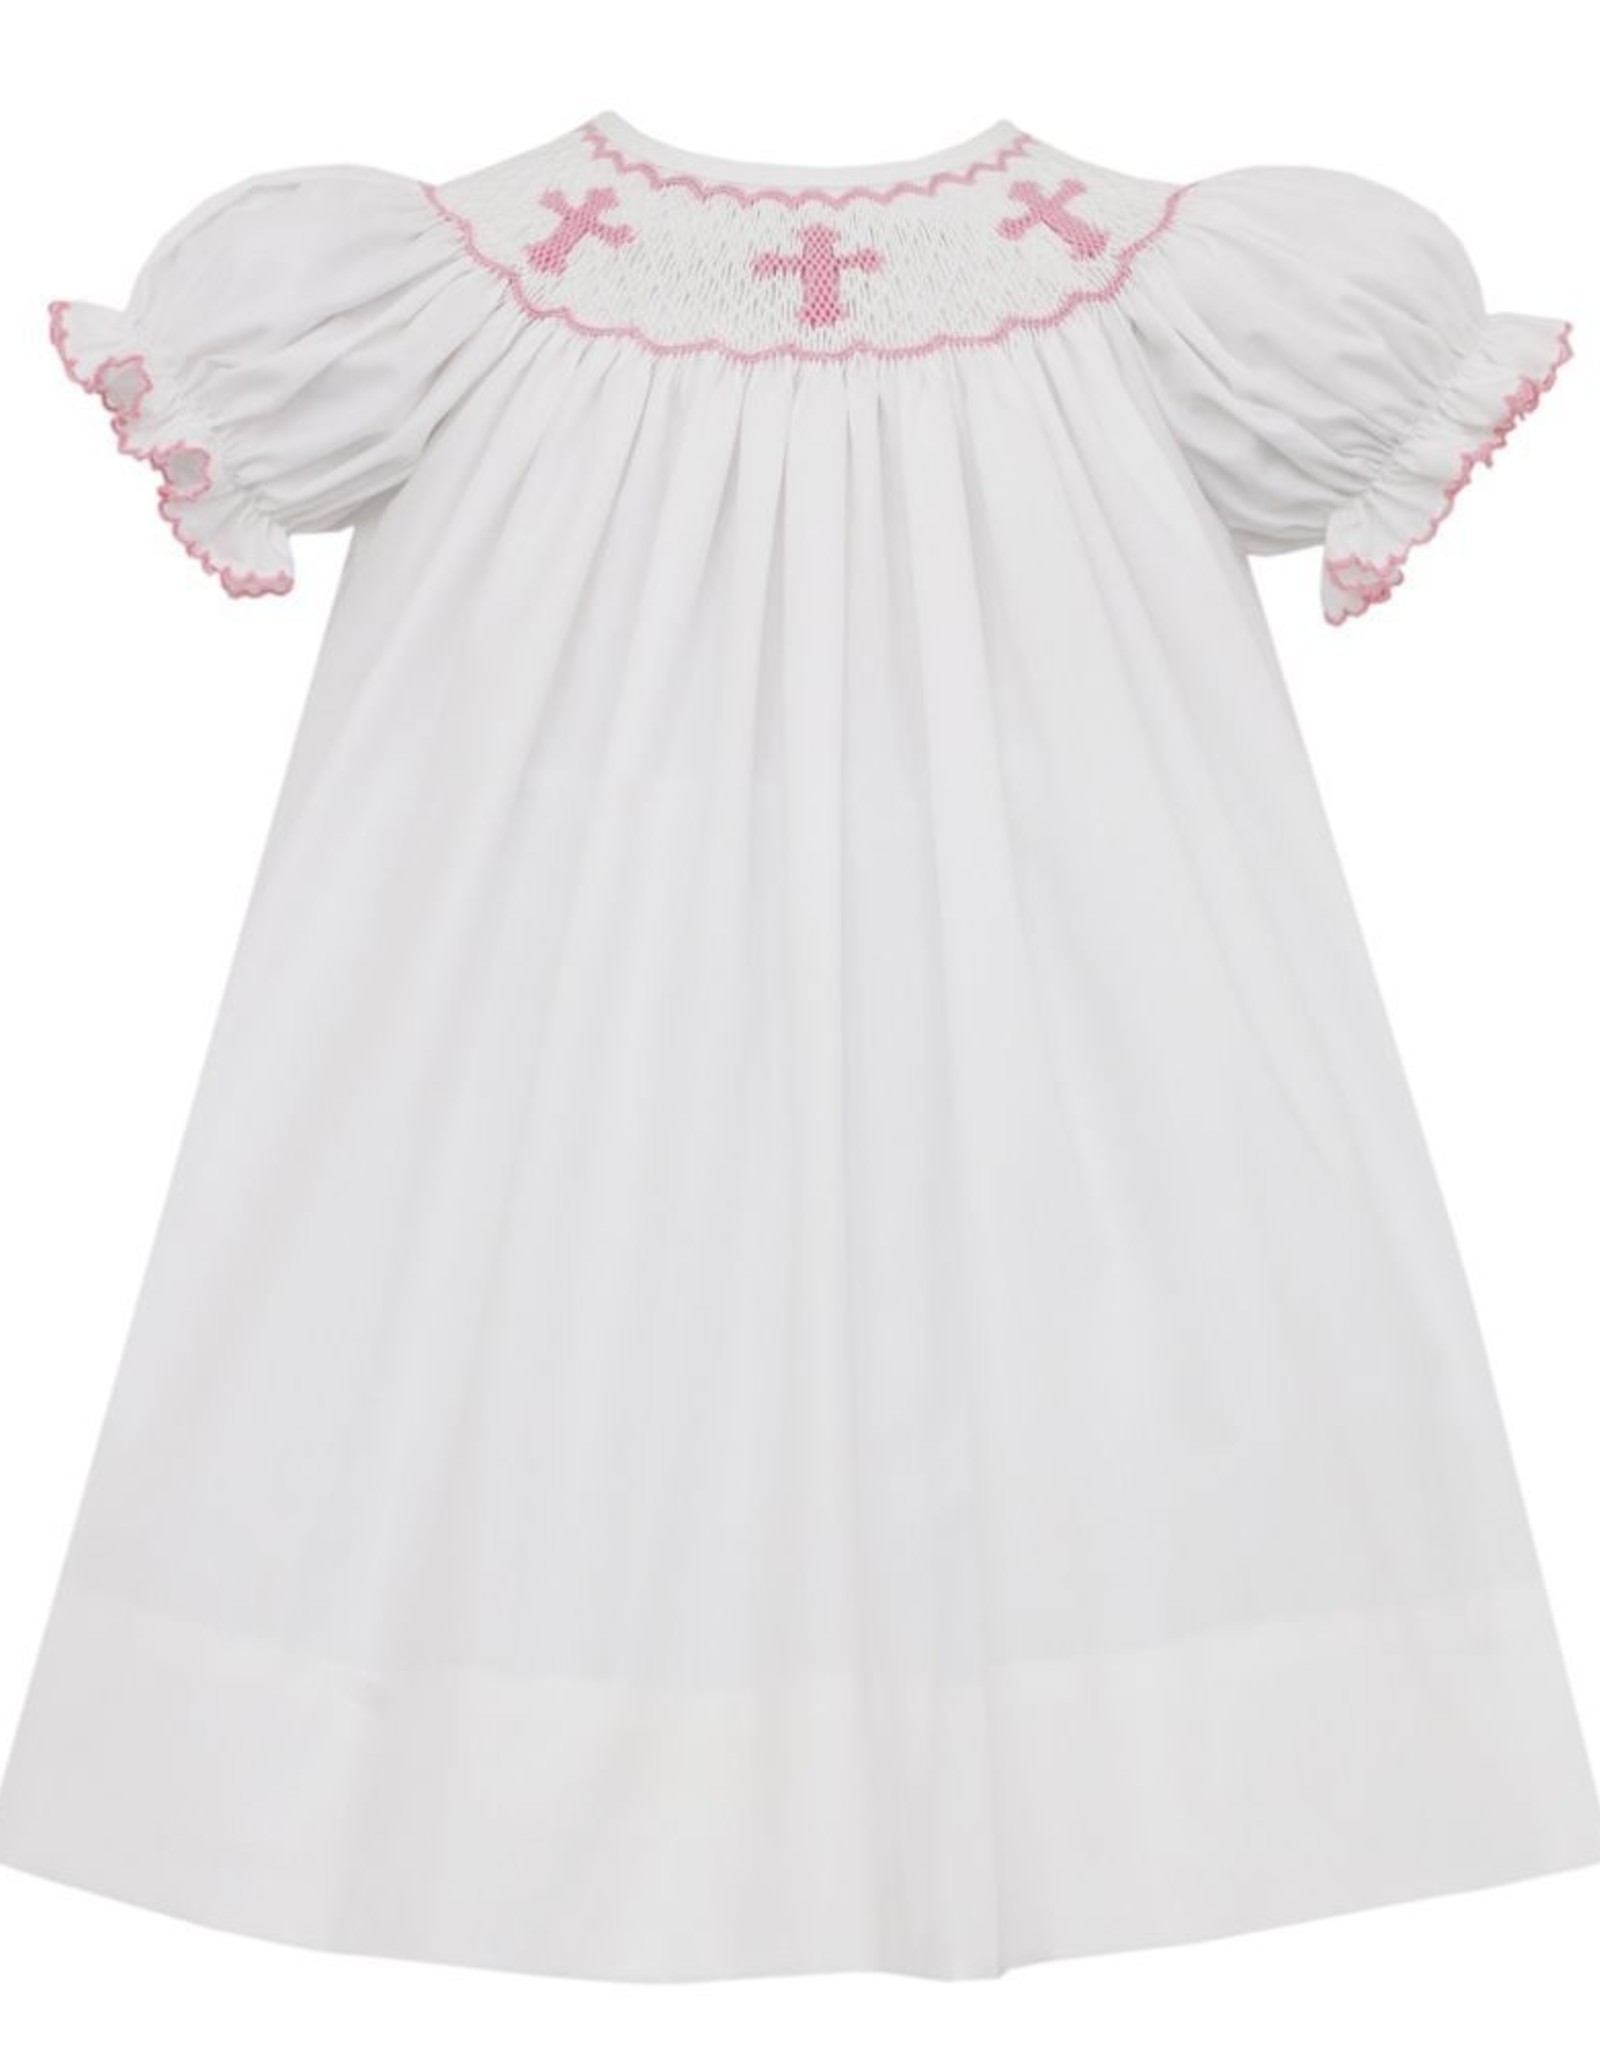 Petit Bebe Bishop Dress in White with Cross Smocking